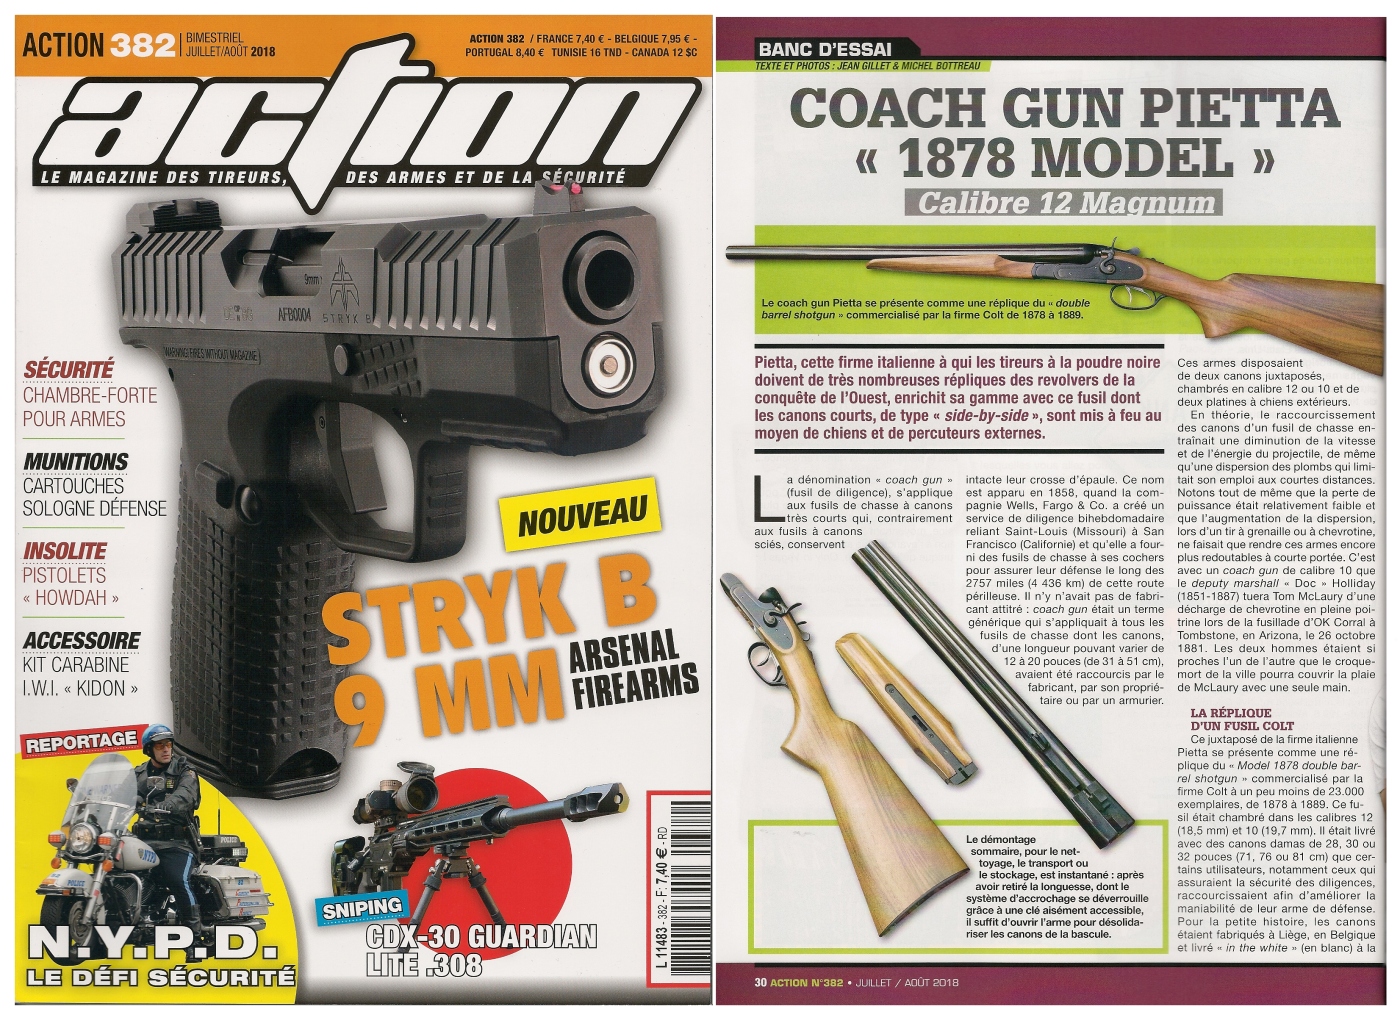 Le banc d’essai du coach gun Pietta modèle 1878 a été publié sur 5 pages dans le magazine Action n° 382 (juillet/août 2018). 